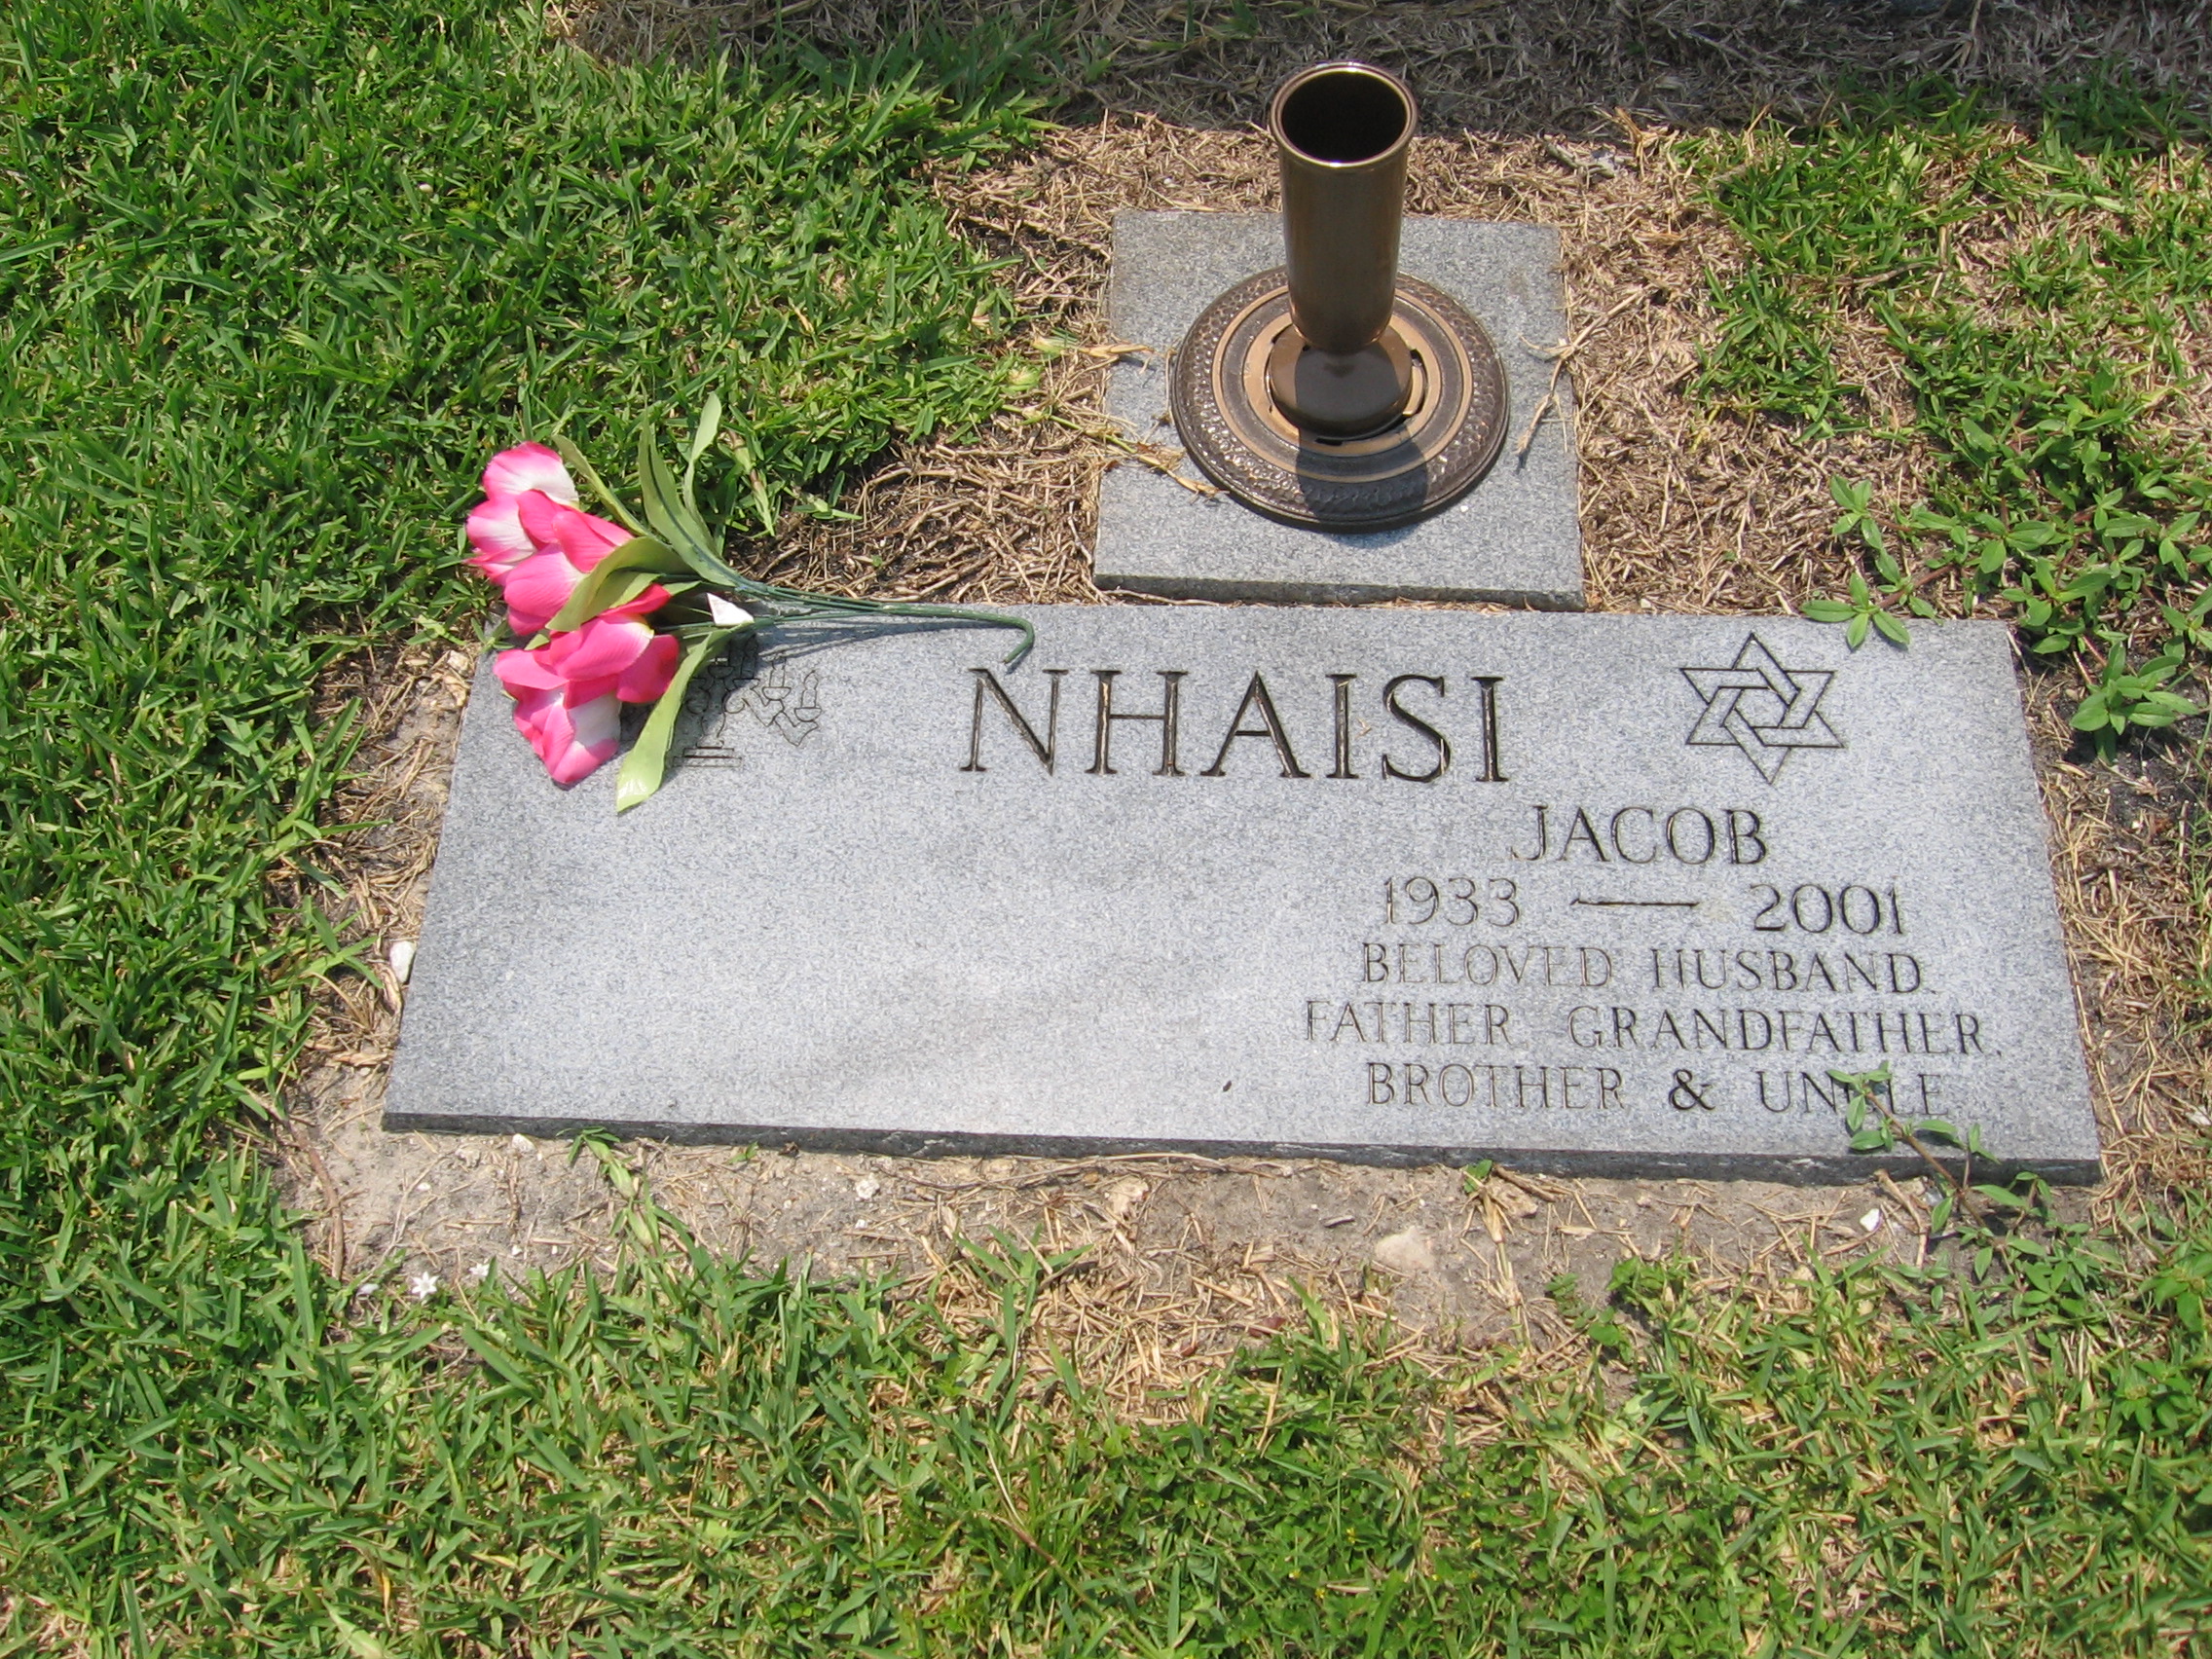 Jacob Nhaisi